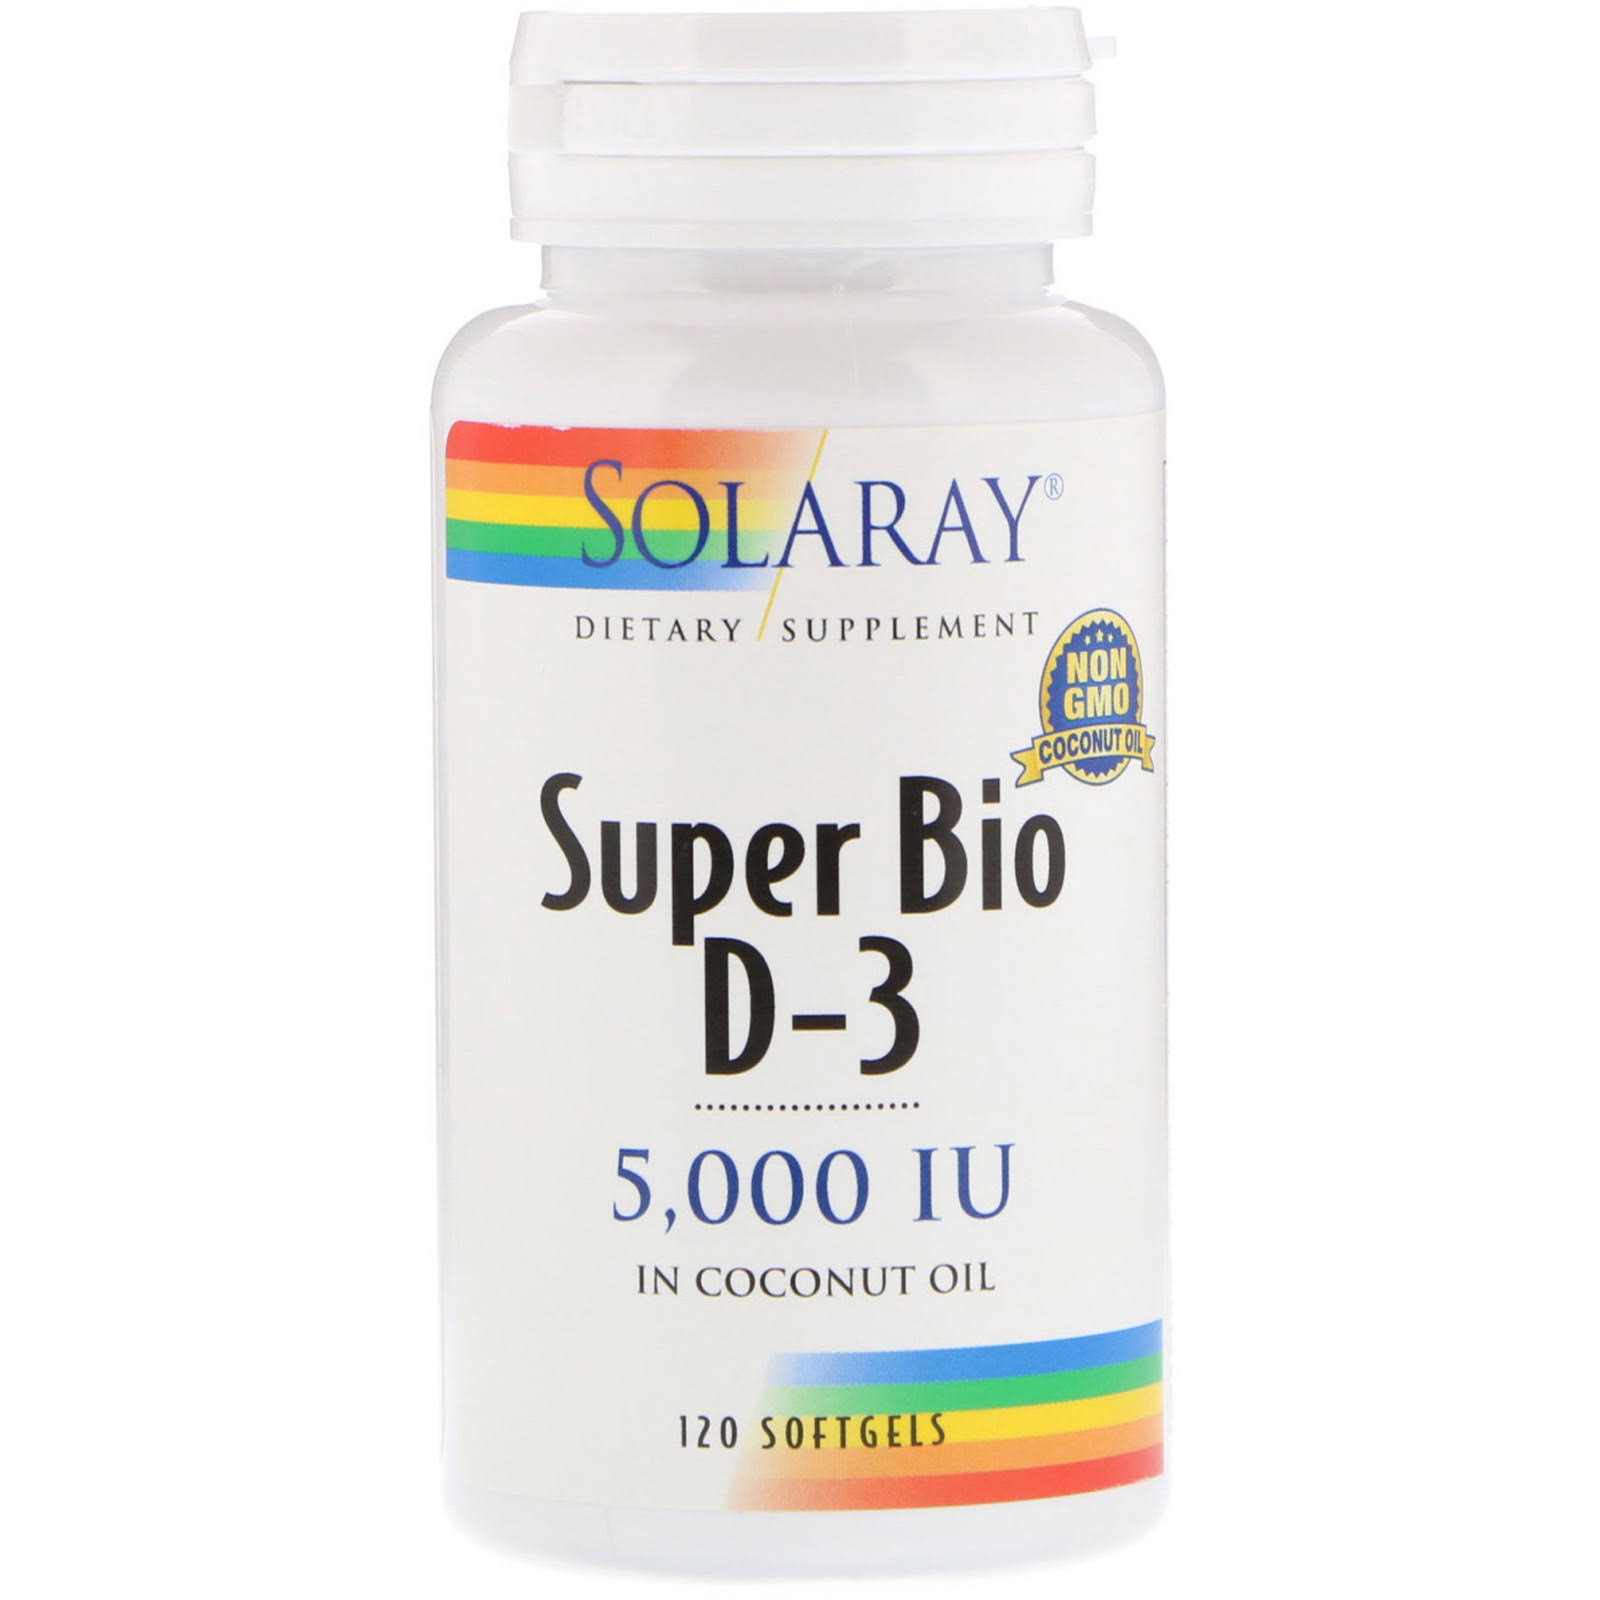 Solaray Super Bio D-3 Dietary Supplement - 120 Softgels, 5000 IU